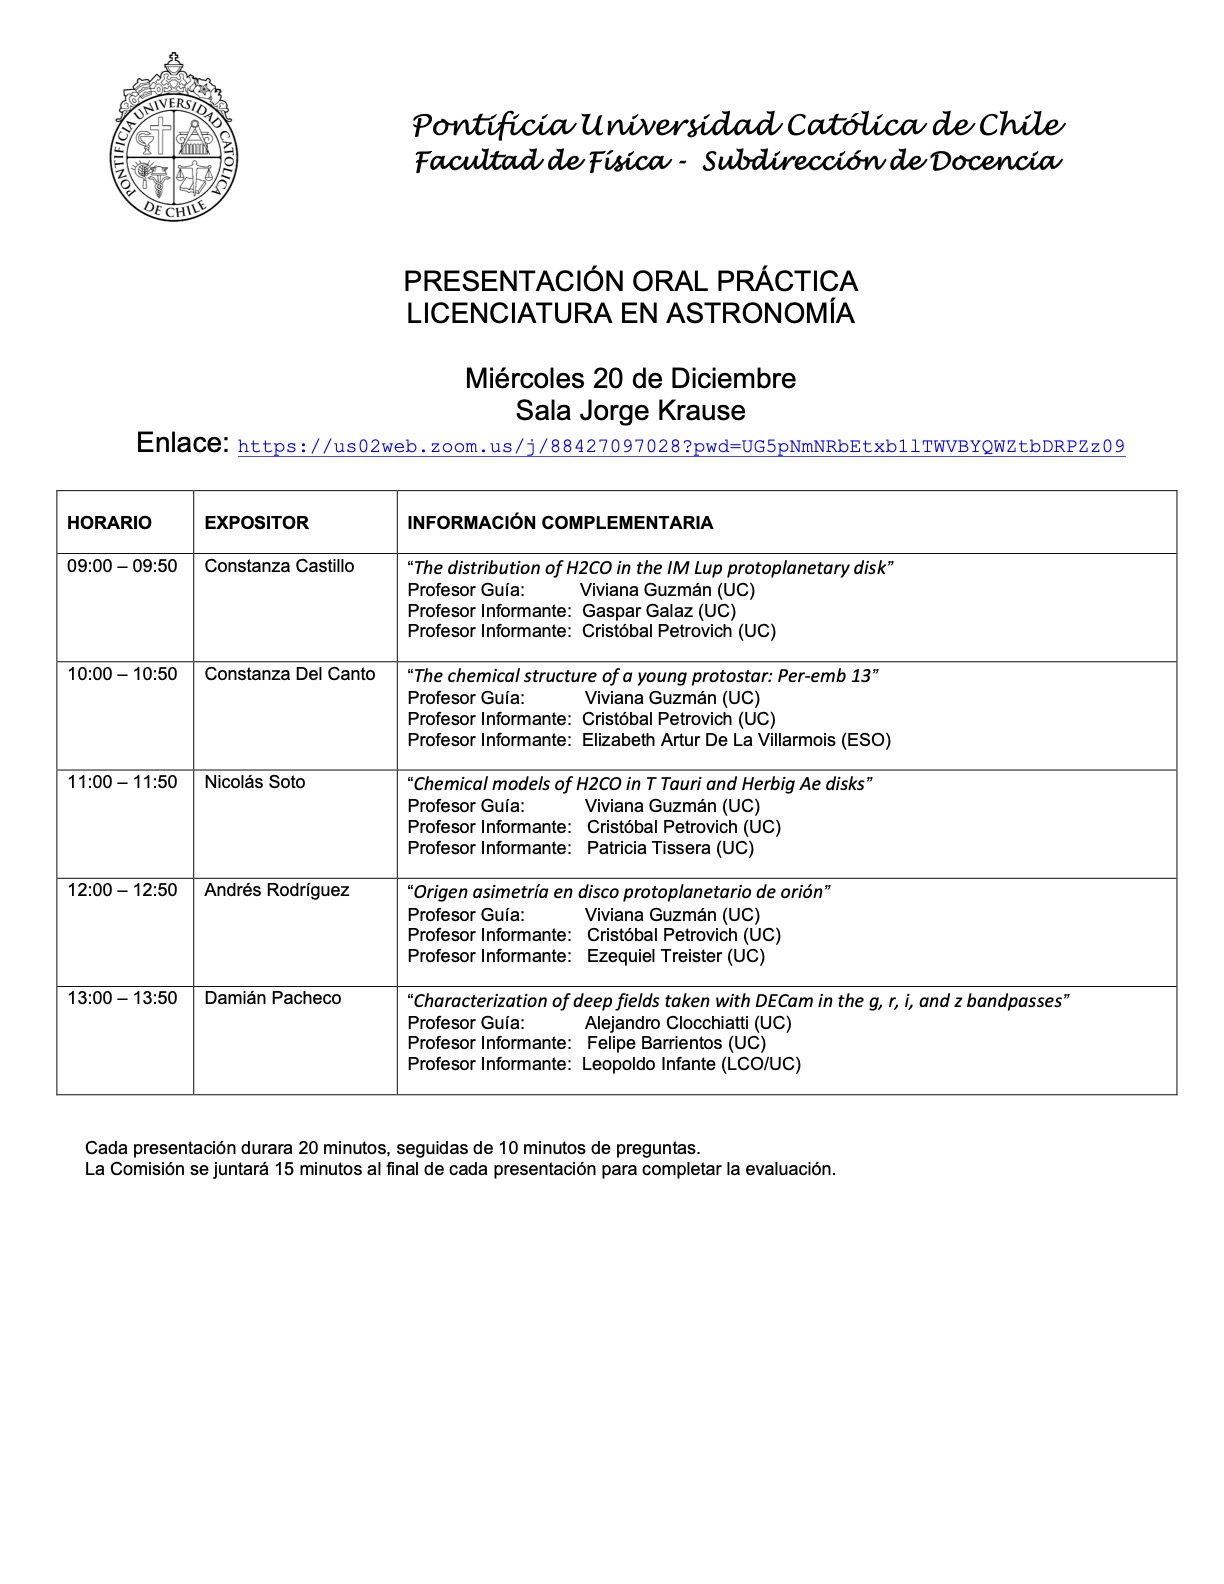 Presentaciones prácticas de Licenciatura en Astronomía (20.12.23) 